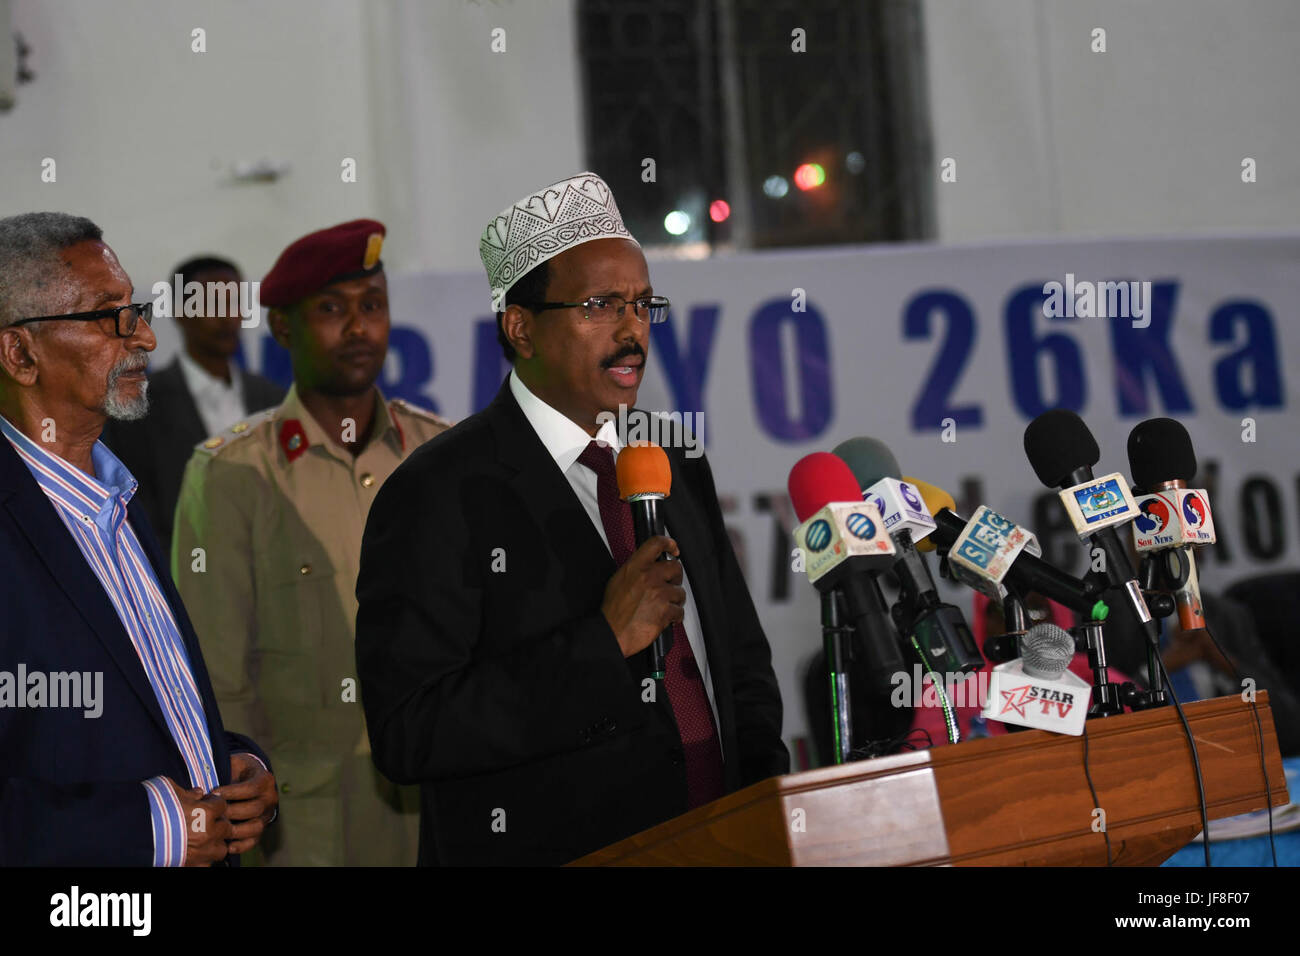 Le Président de la Somalie, Mohamed Abdulahi Farmaajo parle lors d'une cérémonie pour marquer le 57e anniversaire de la journée des régions du nord de la Somalie ont obtenu leur indépendance de la Grande-Bretagne le 26 juin 1960. Cet événement a eu lieu à Mogadiscio's town hall le 26 juin 2017. L'AMISOM Photo / Ilyas Ahmed Banque D'Images